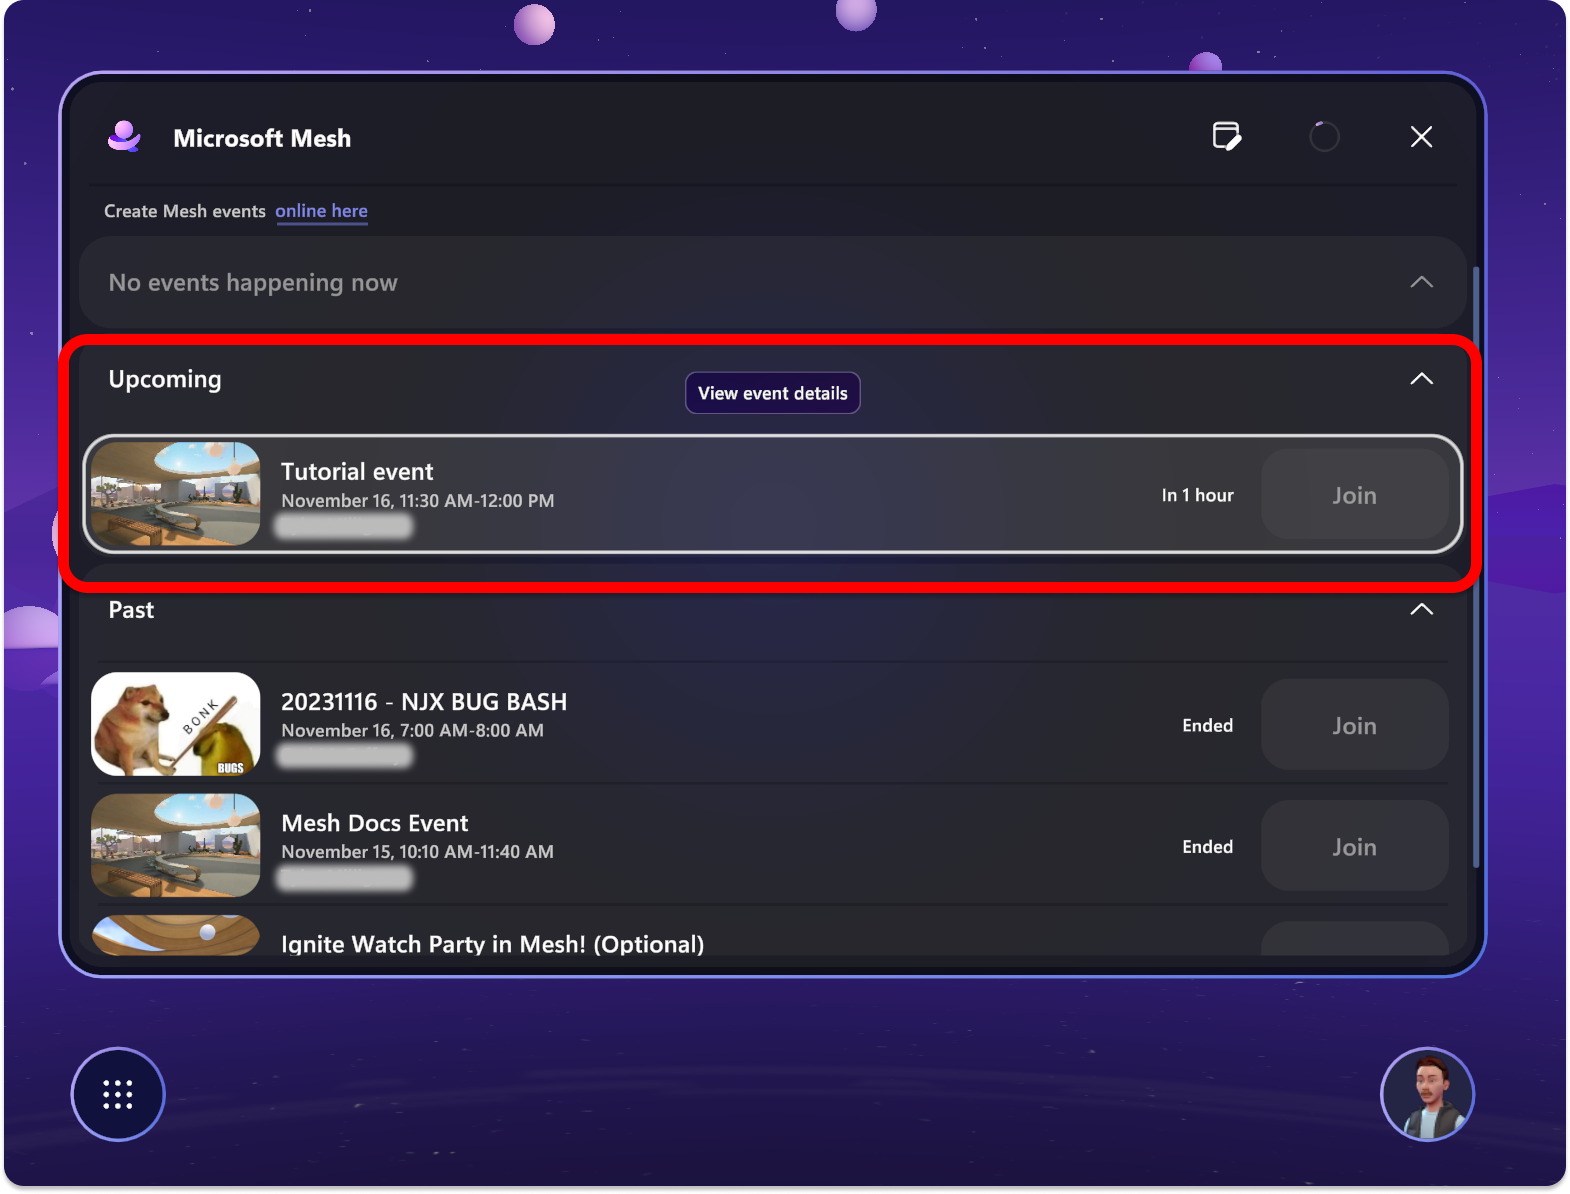 Captura de pantalla de la aplicación Mesh que muestra un próximo evento resaltado para indicar que debe seleccionarlo.